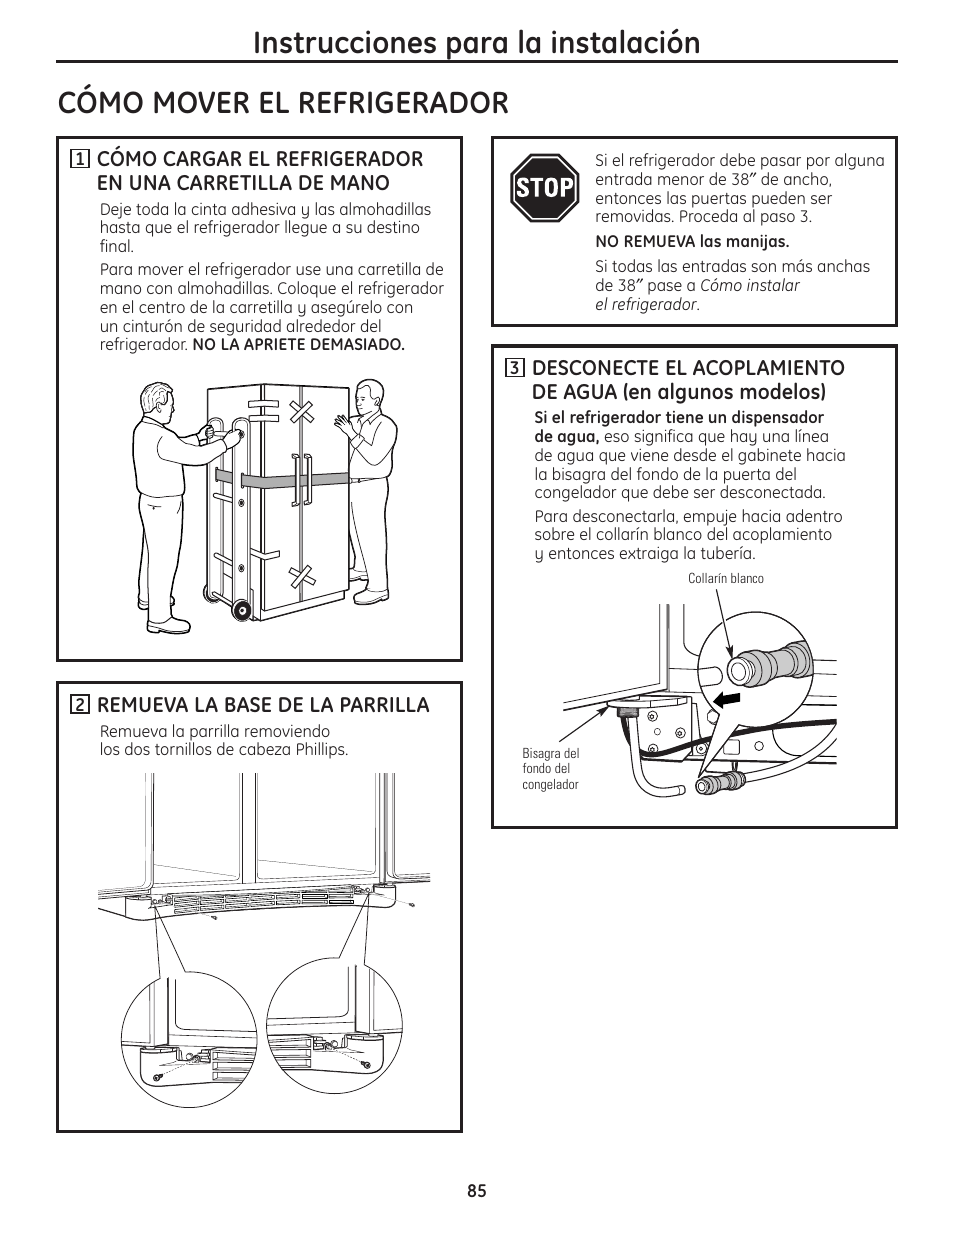 Cómo mover el refrigerador, Cómo mover el refrigerador –88, Instrucciones  para la instalación | GE 200D8074P036 User Manual | Page 85 / 104 |  Original mode